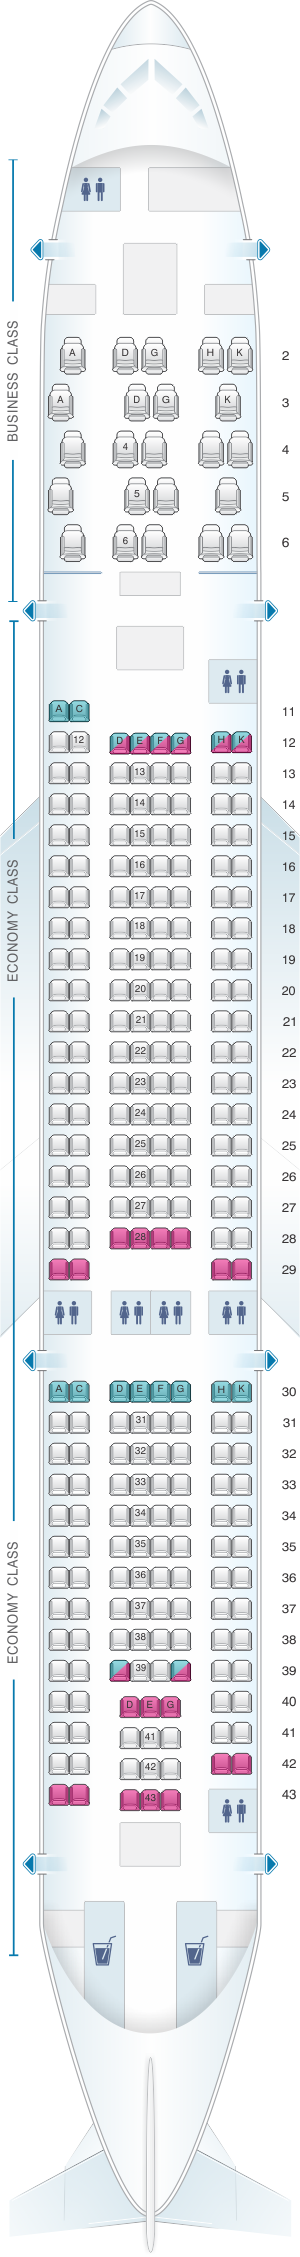 Aer Lingus Seating Plan